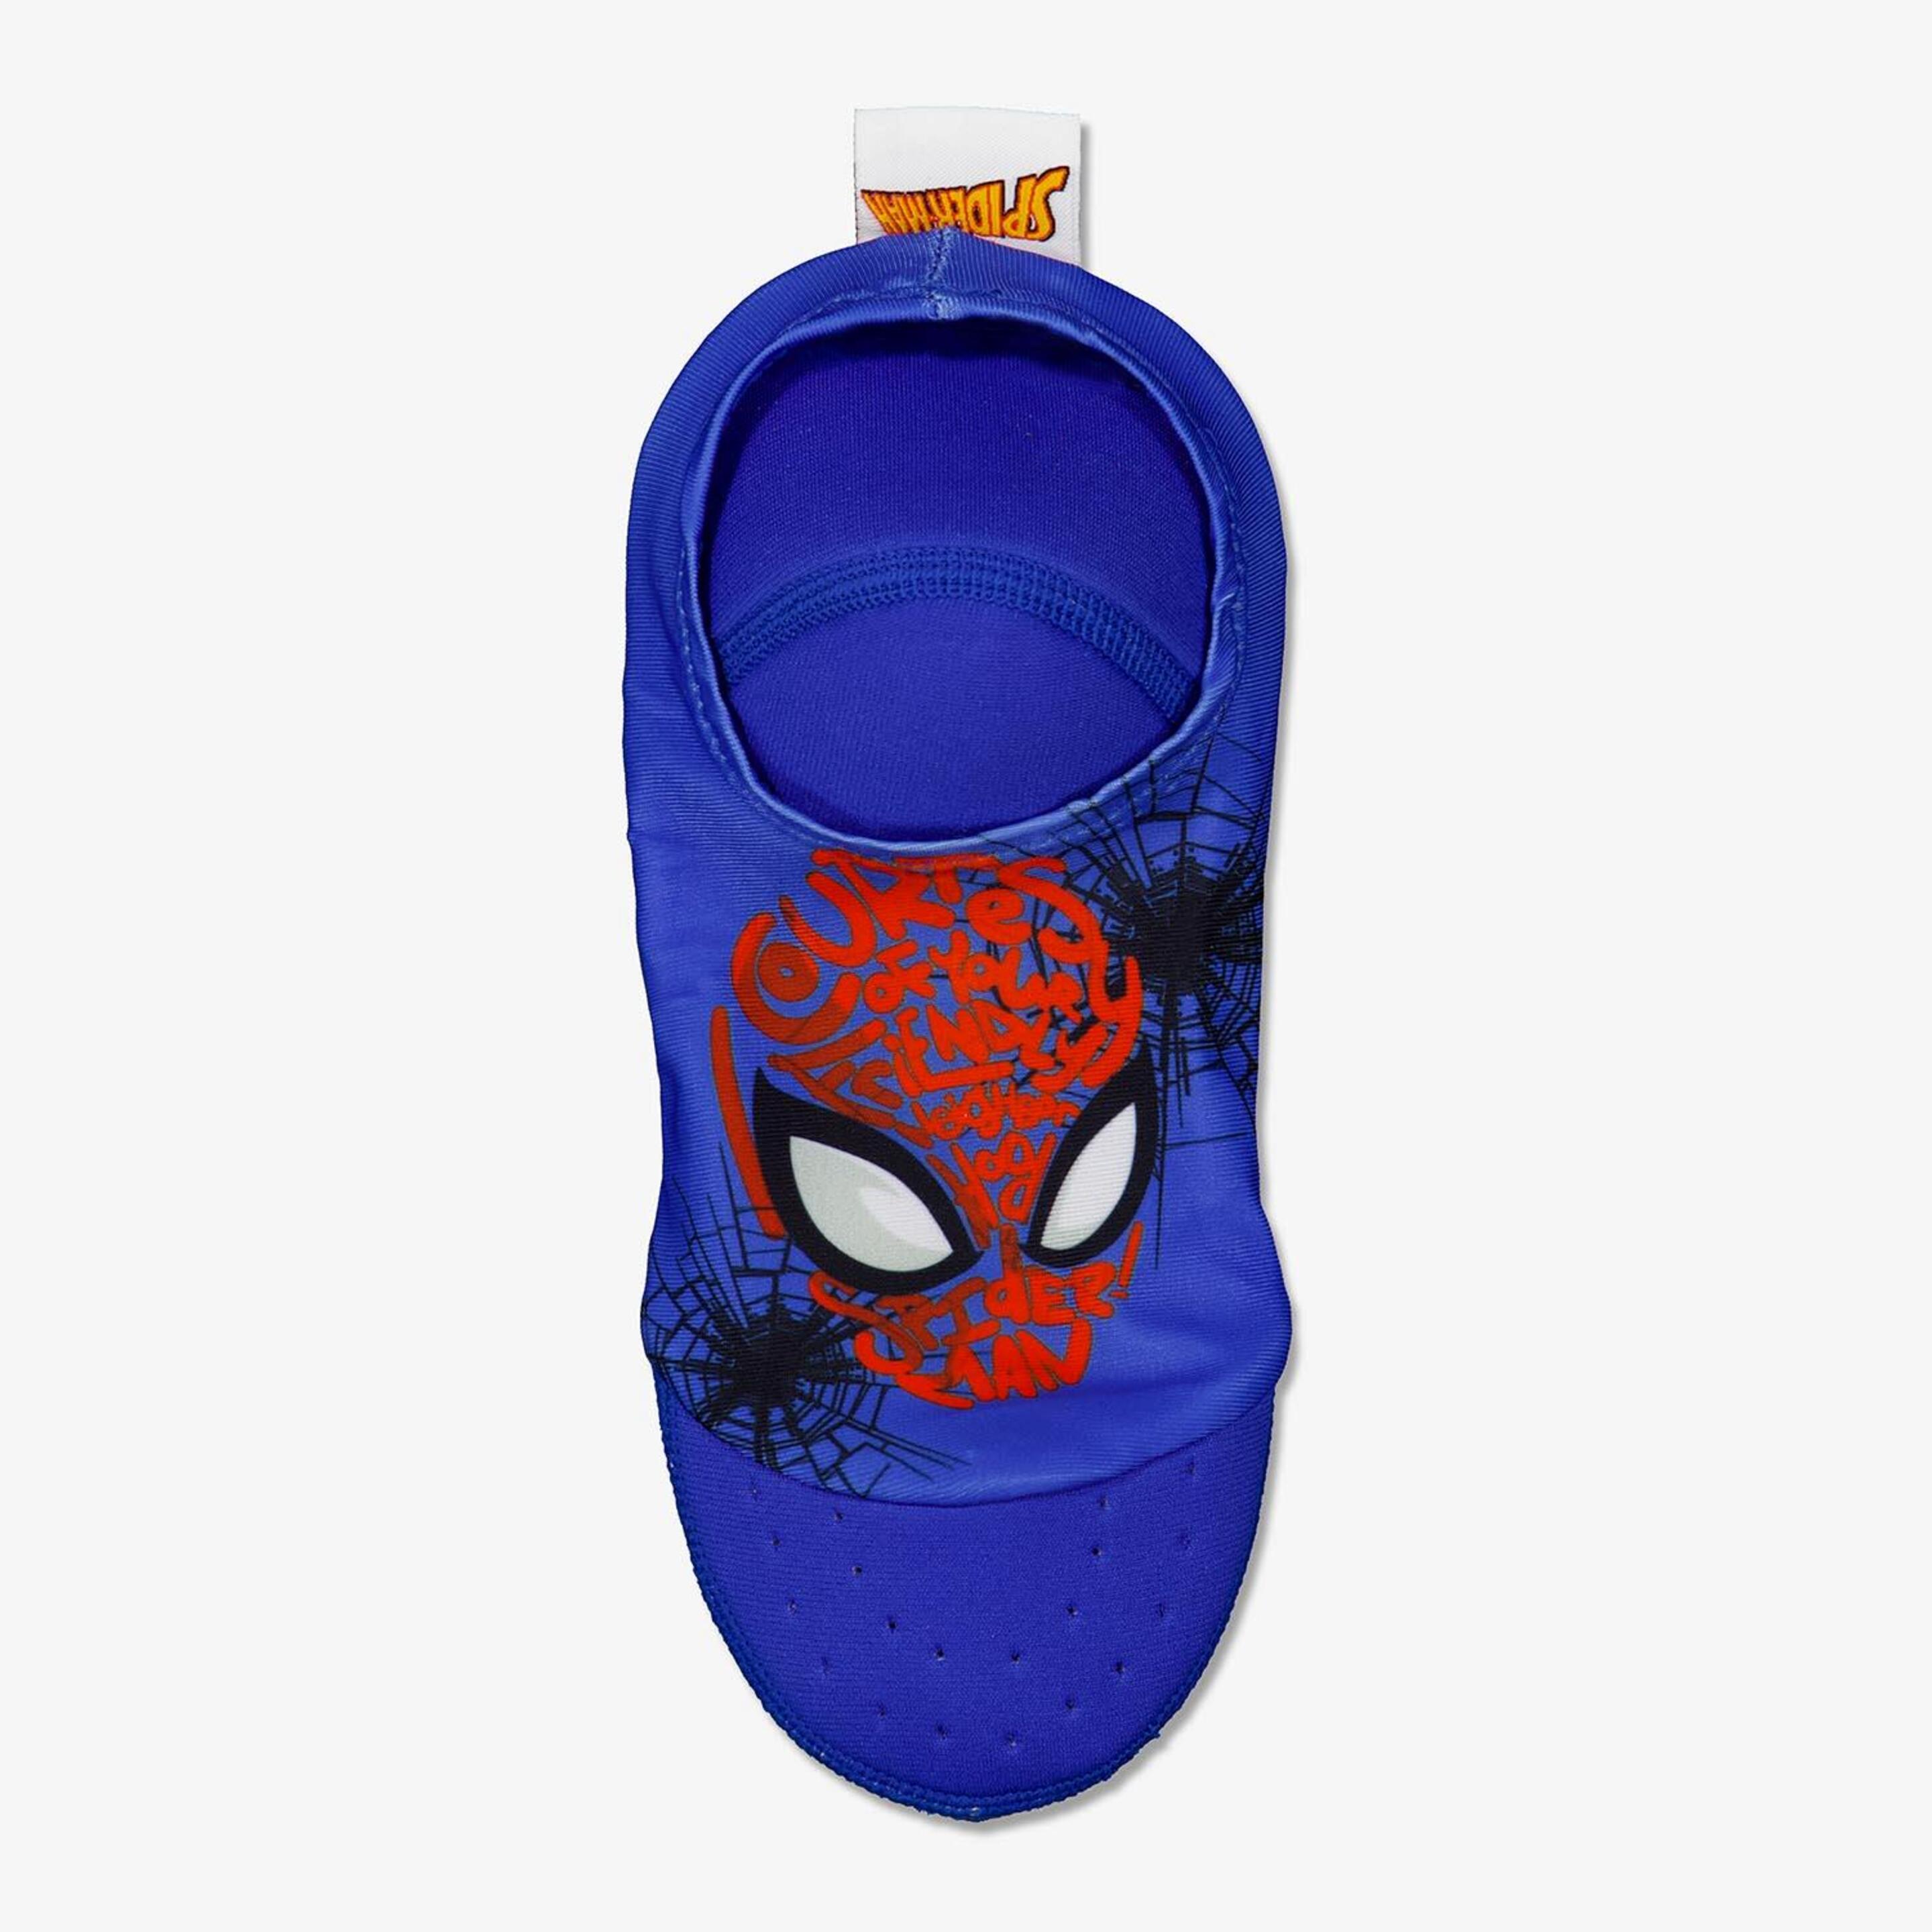 Meias Spider-man - azul - Meias Natação Menino